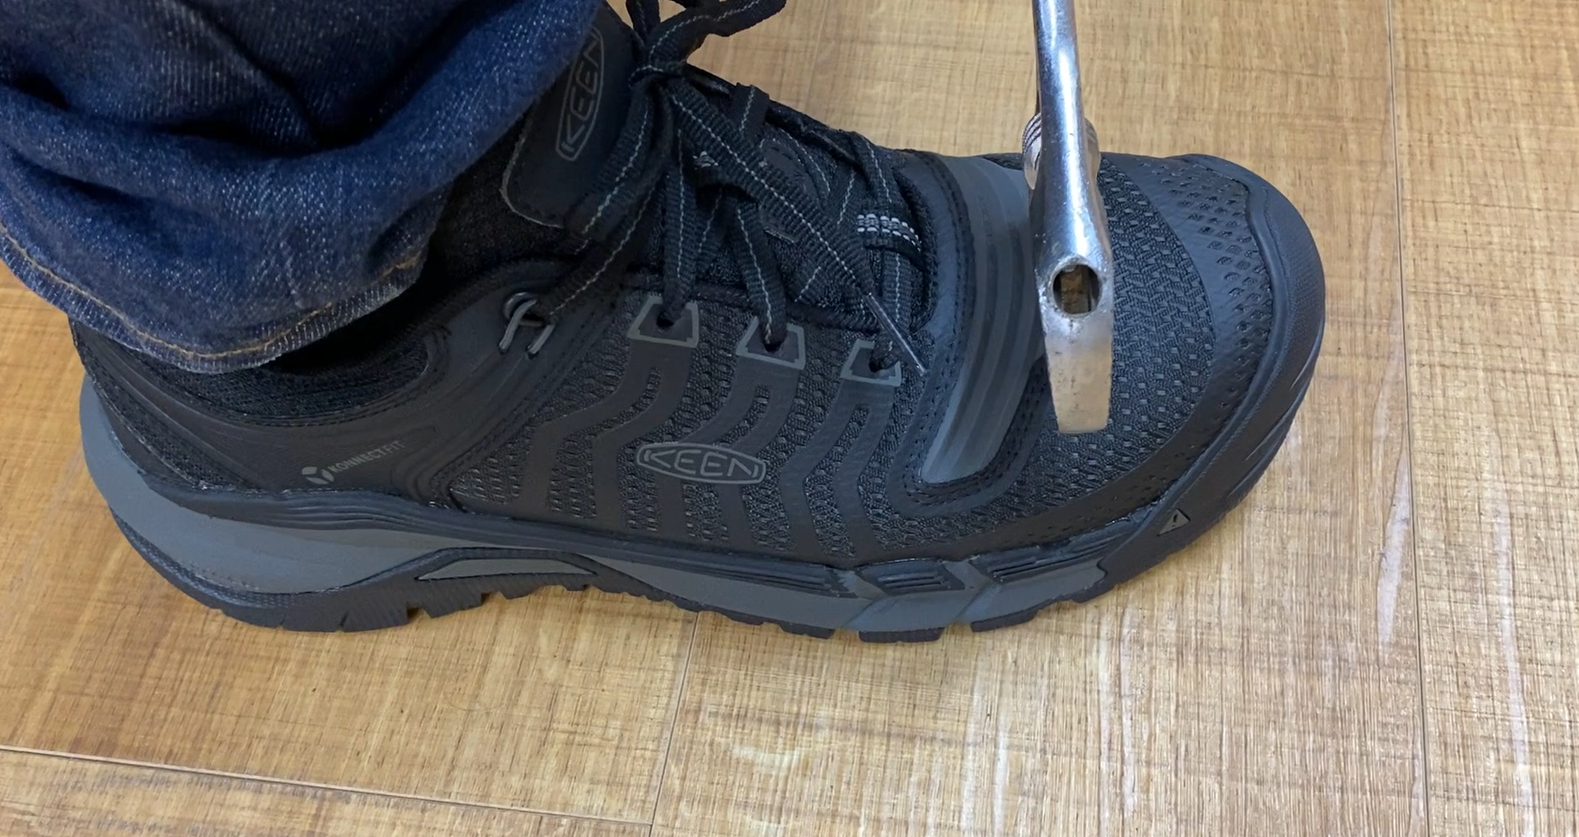 KEEN UTILITY】KEEN(キーン)の安全靴!?作業時だけでなく、日常でも使いたくなるほどおしゃれな安全靴をご紹介!! |  FITTWO(フィットツー) 上野のアウトドアショップ